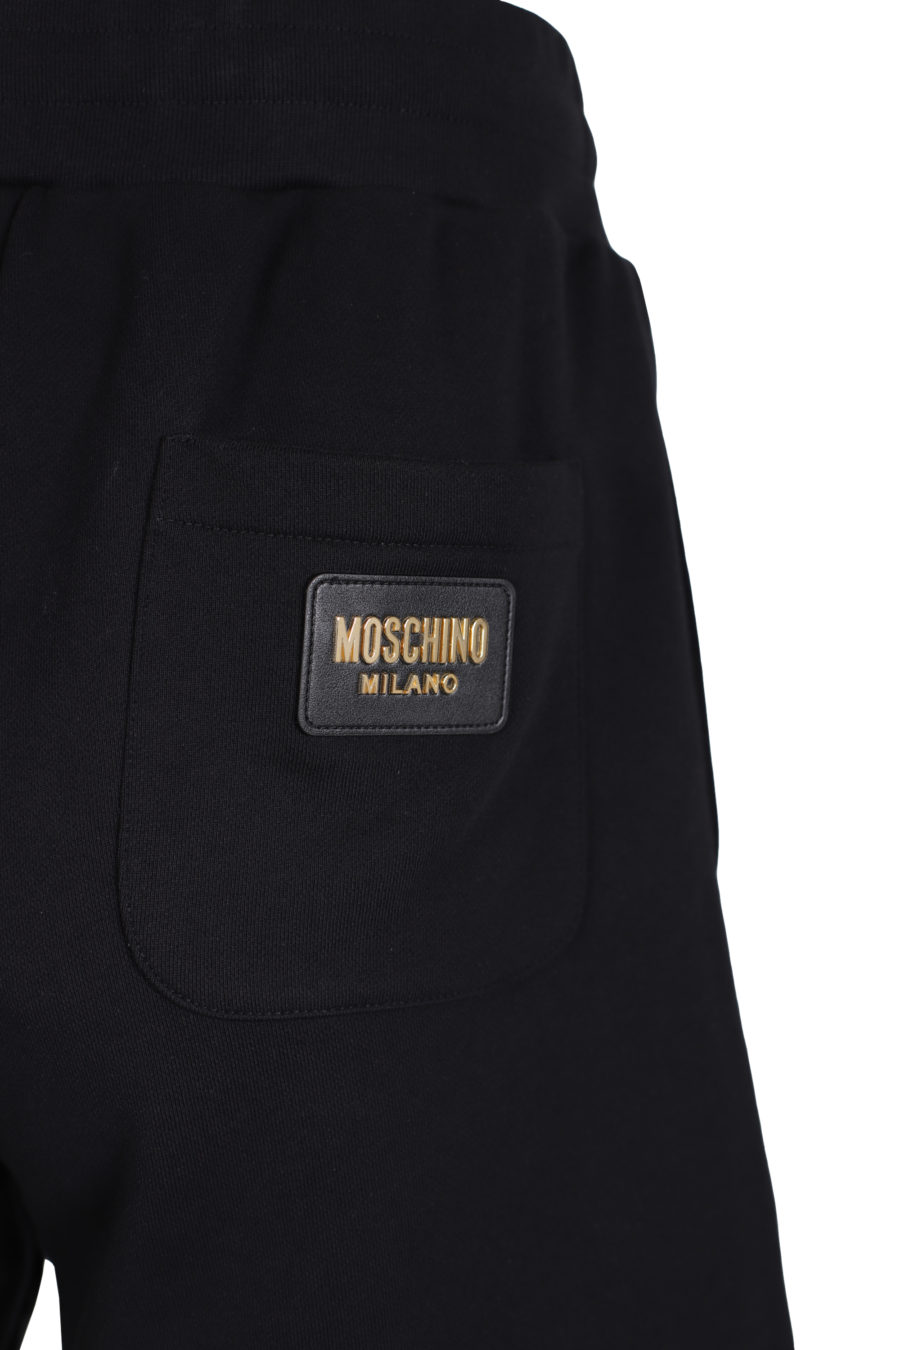 Short noir avec logo doré au dos - IMG 1412